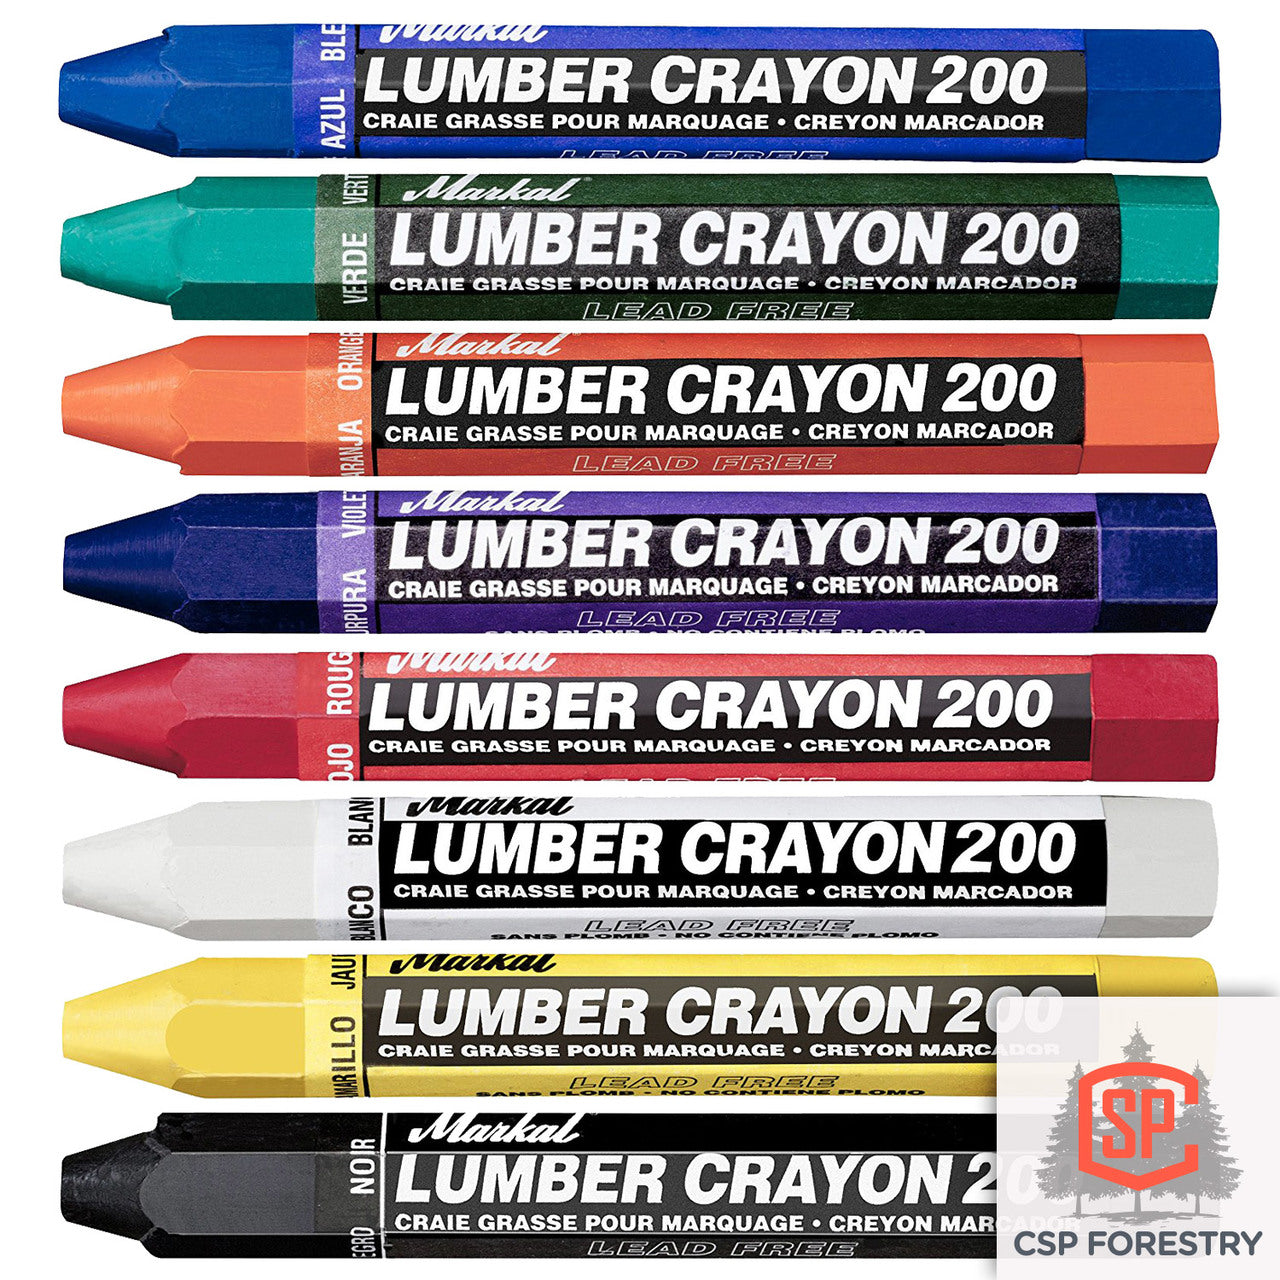 <br /> Markal Lumber Crayon Black 1pc